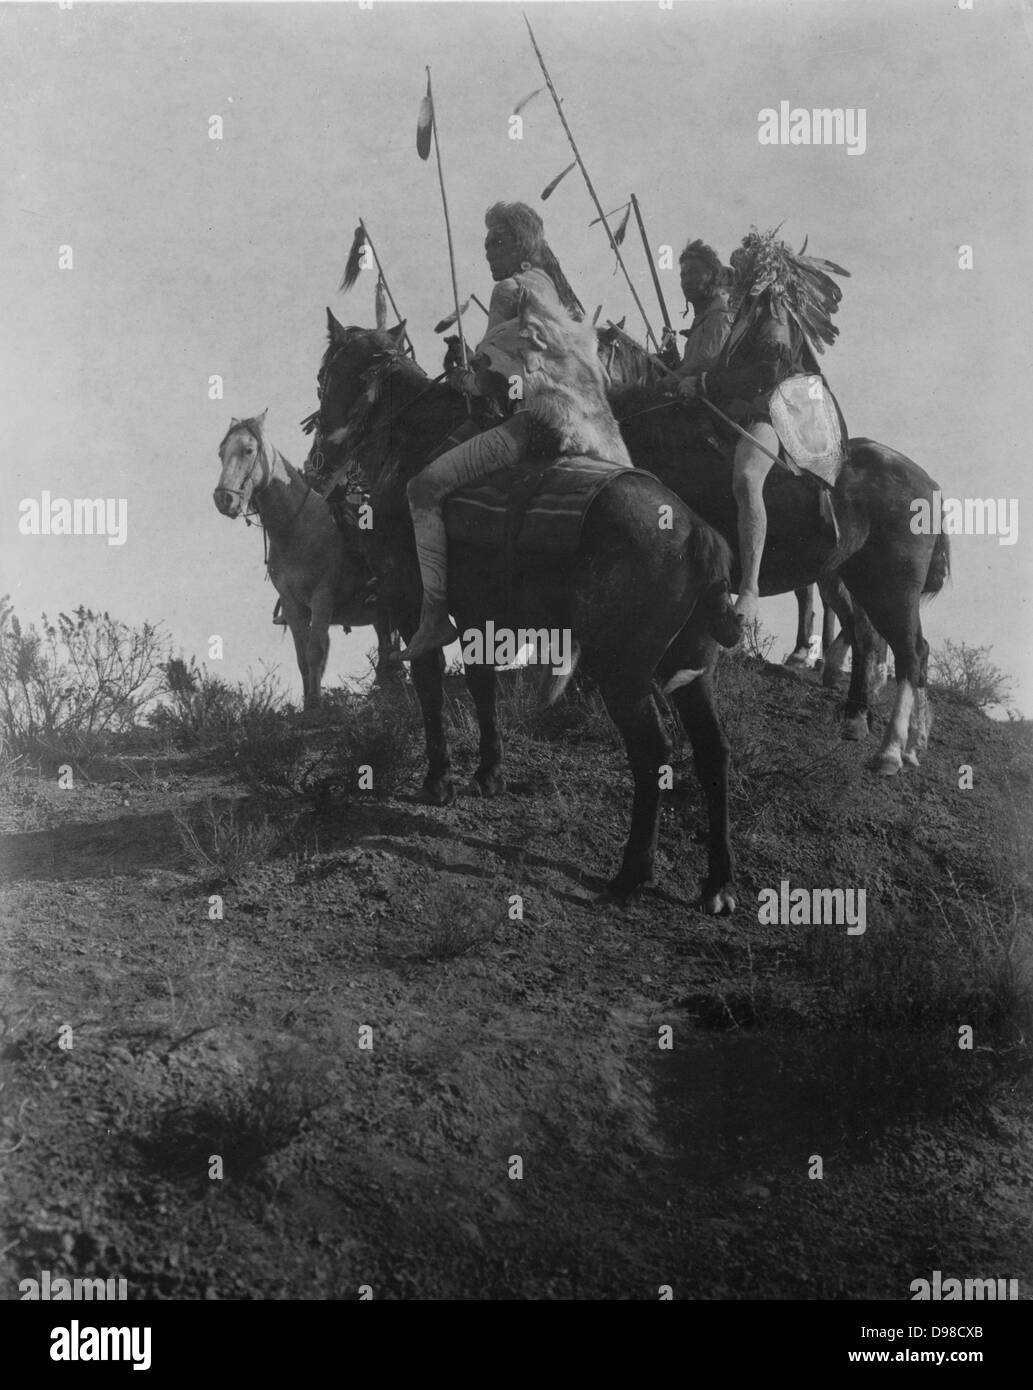 Cuatro hombres a caballo Cuervo sosteniendo lanzas con plumas, c1910. Fotografía por Edward Curtis (1868-1952). Foto de stock